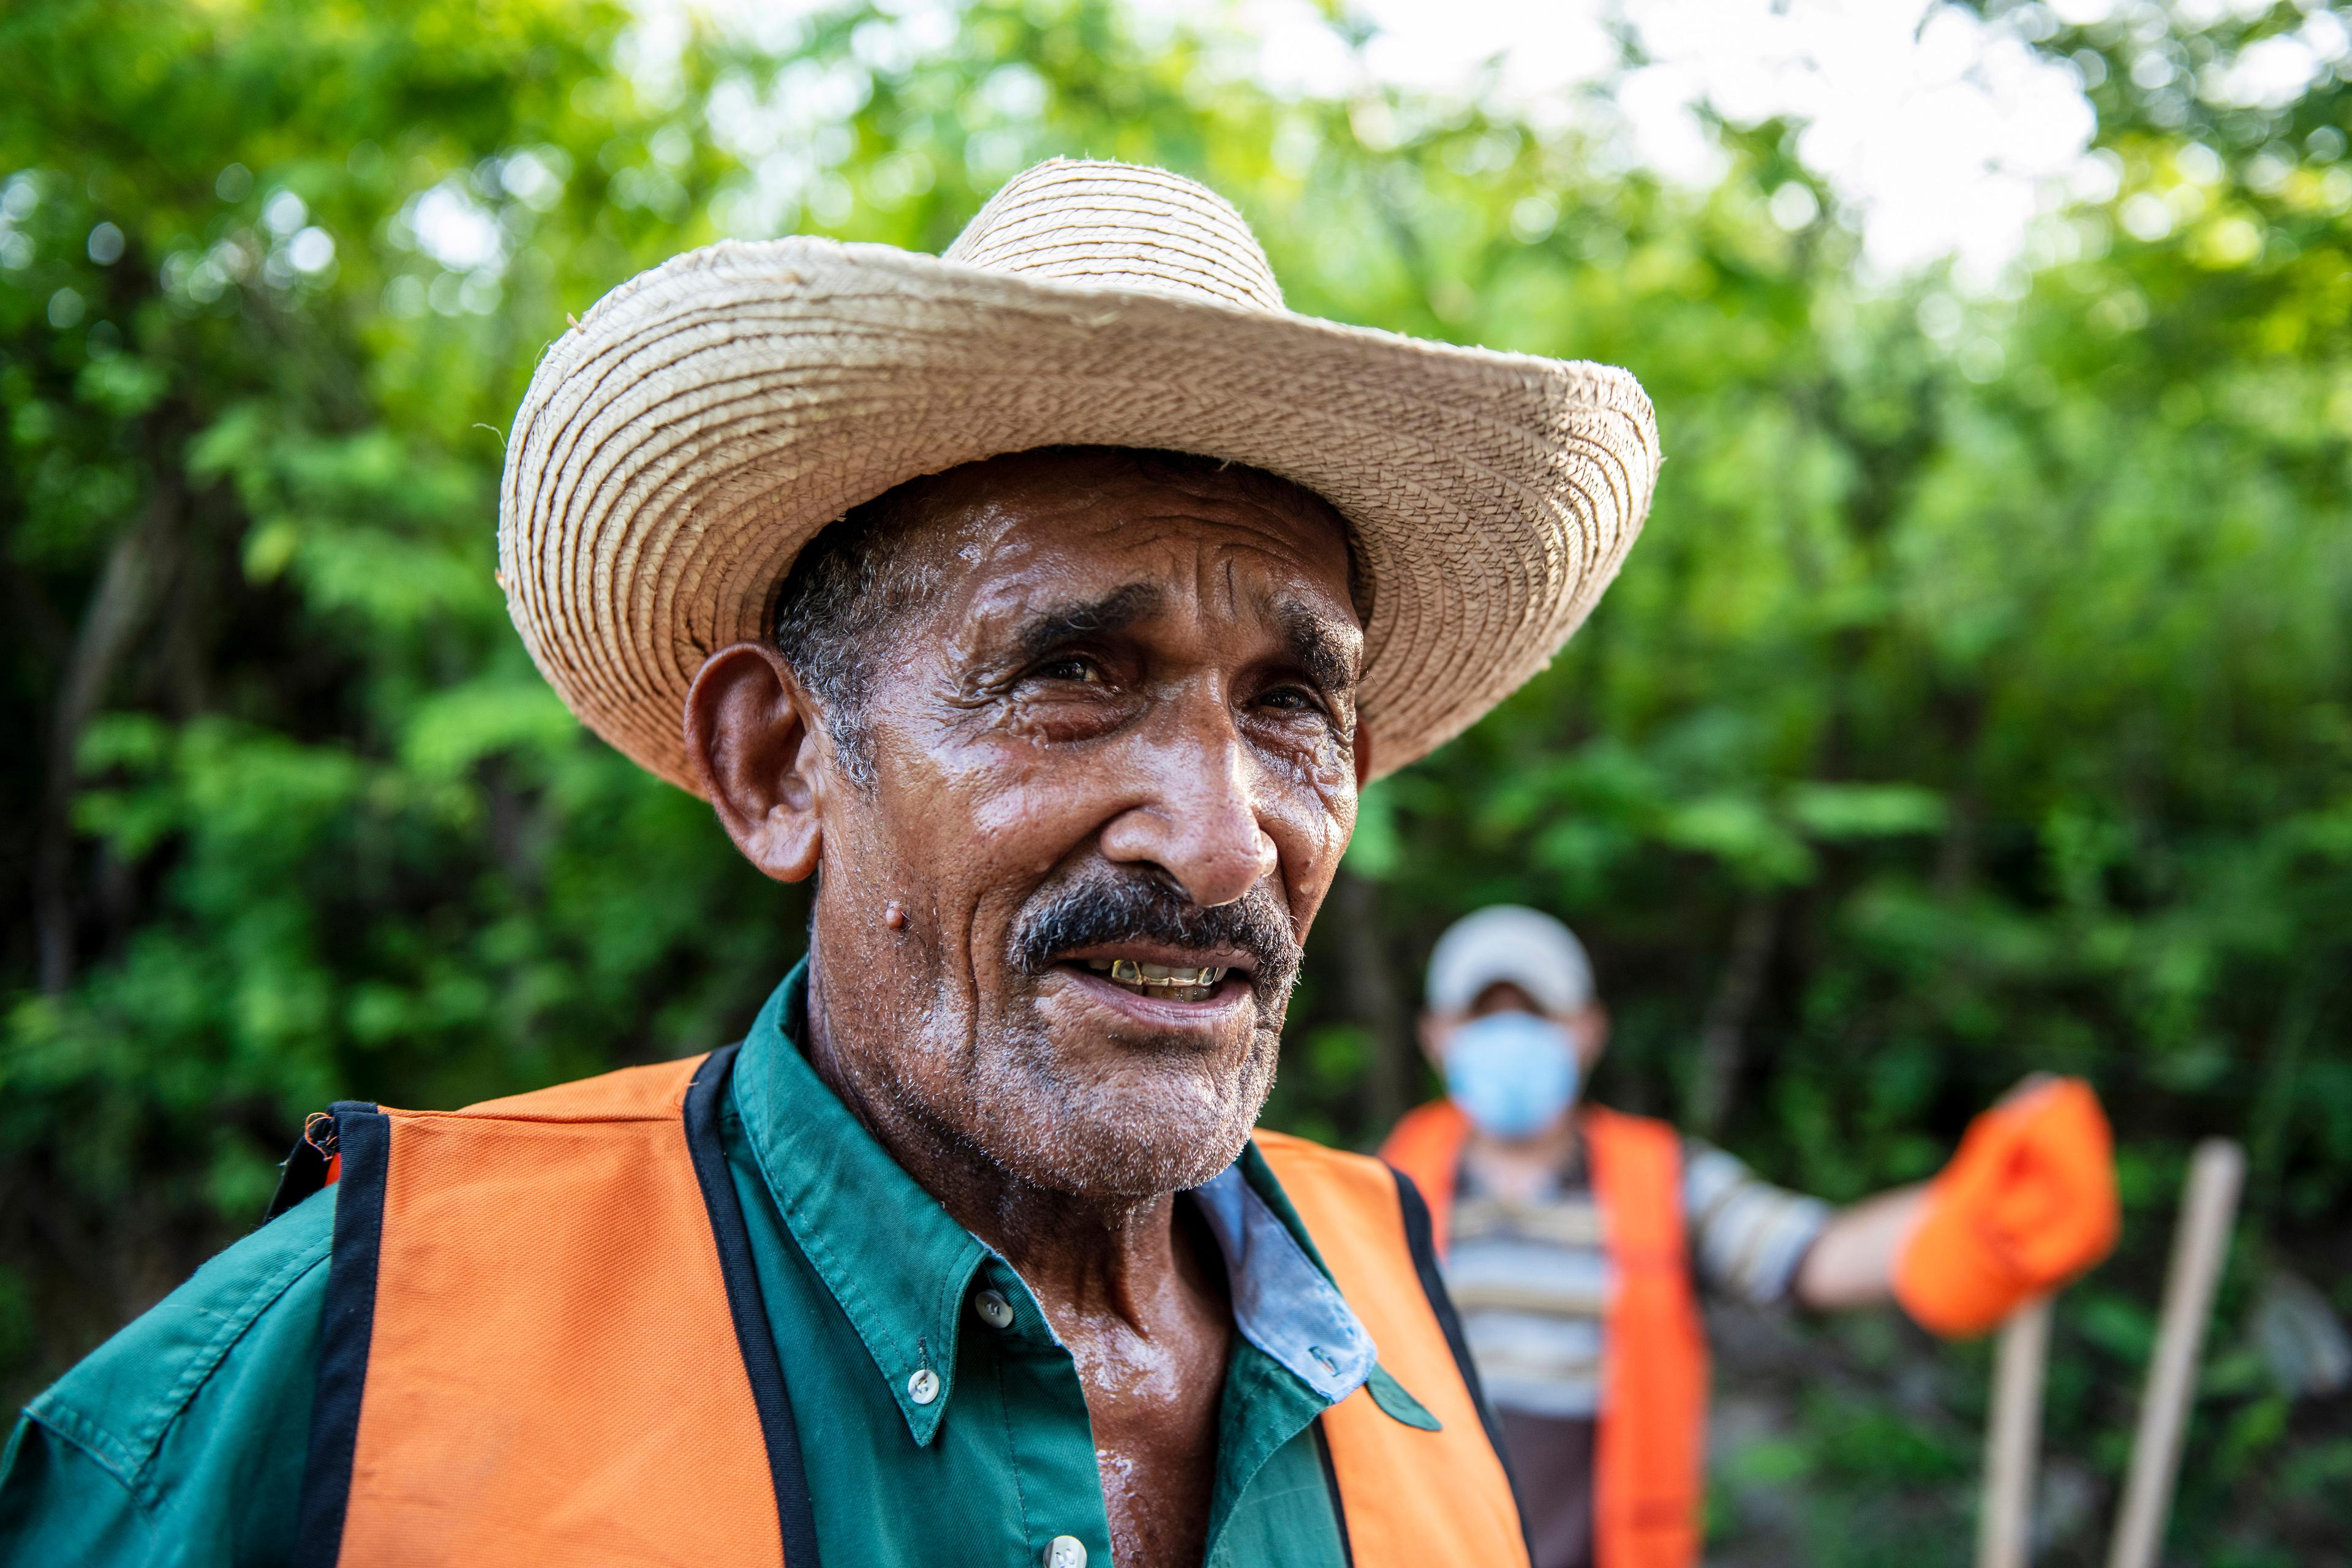 Portraitaufnahme eines älteren Mannes mit Schnauz, einem Hut und oranger Weste. Im Hintergrund befinden sich Bäume und ein weiterer Mann.